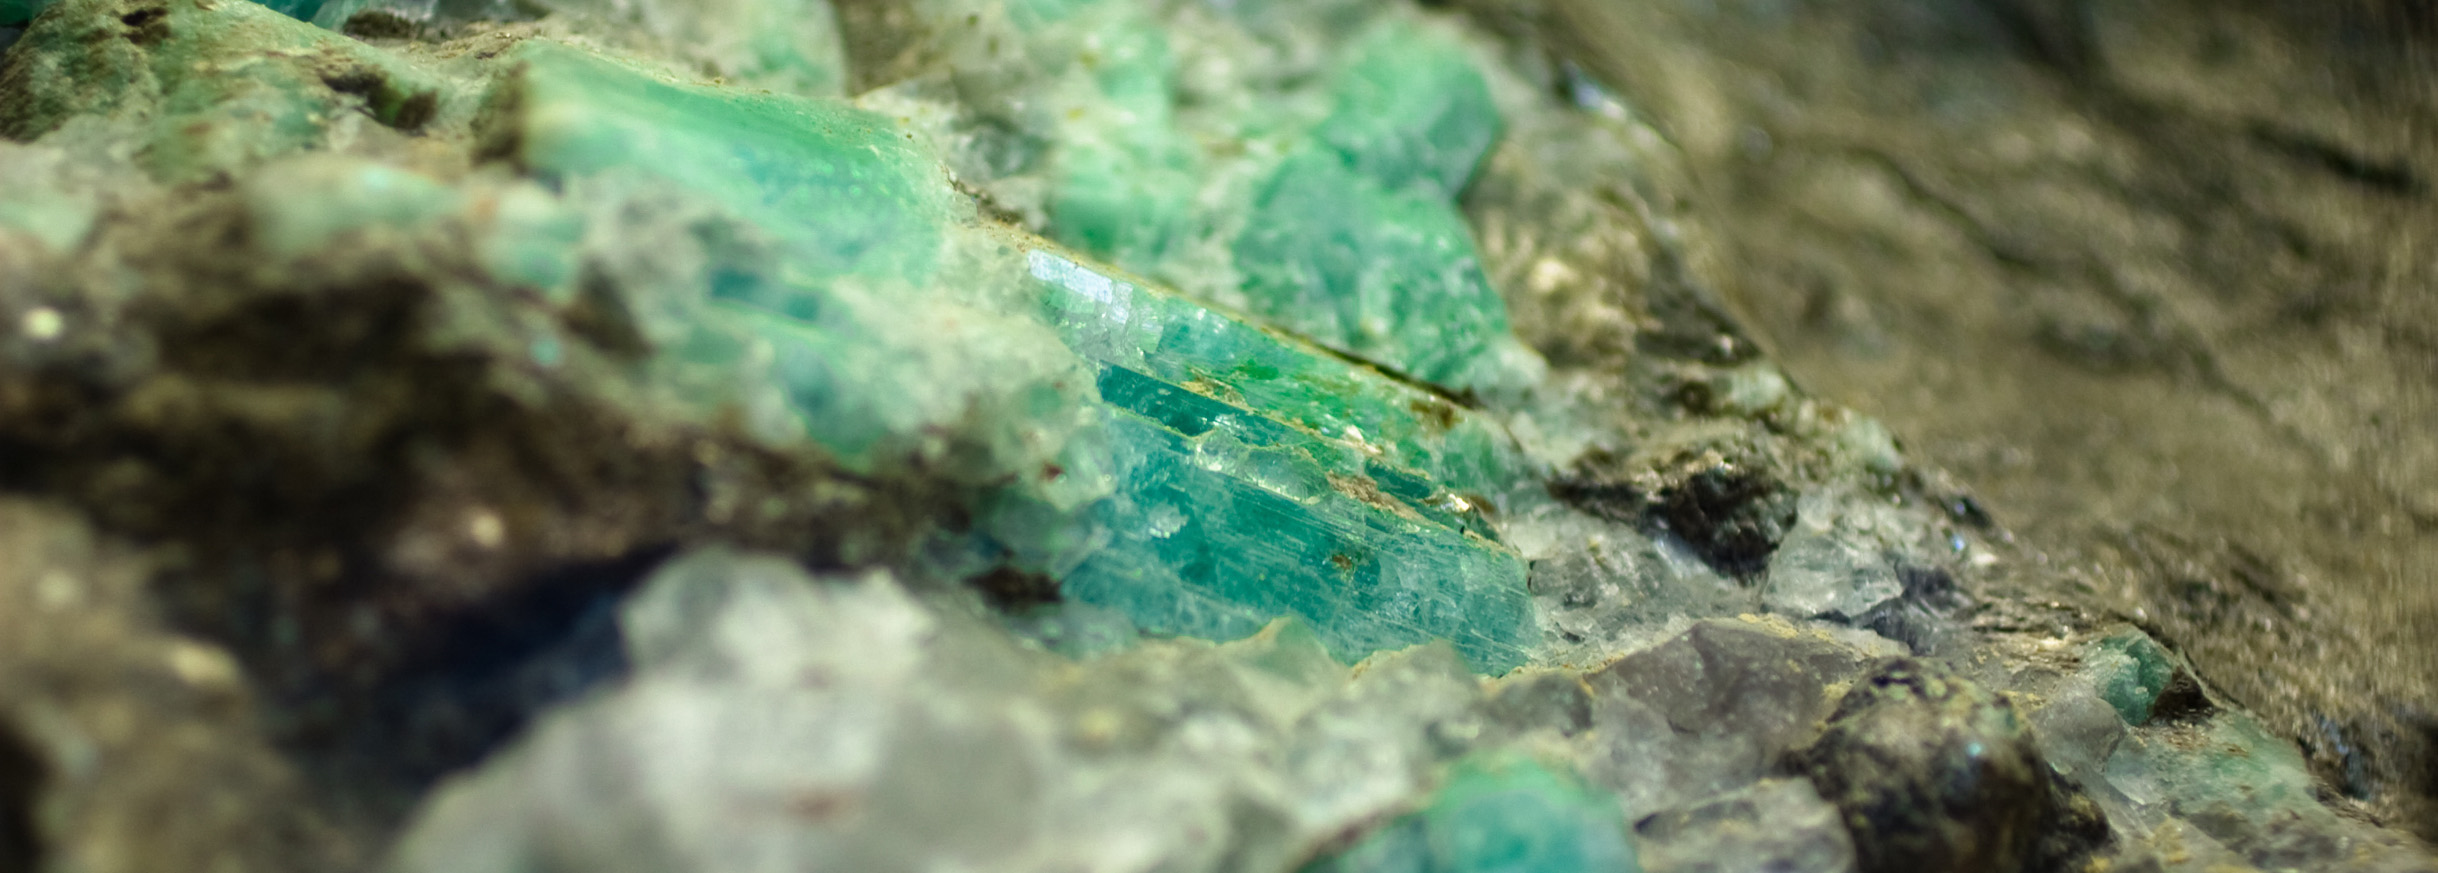 Closeup of Emerald Crystals